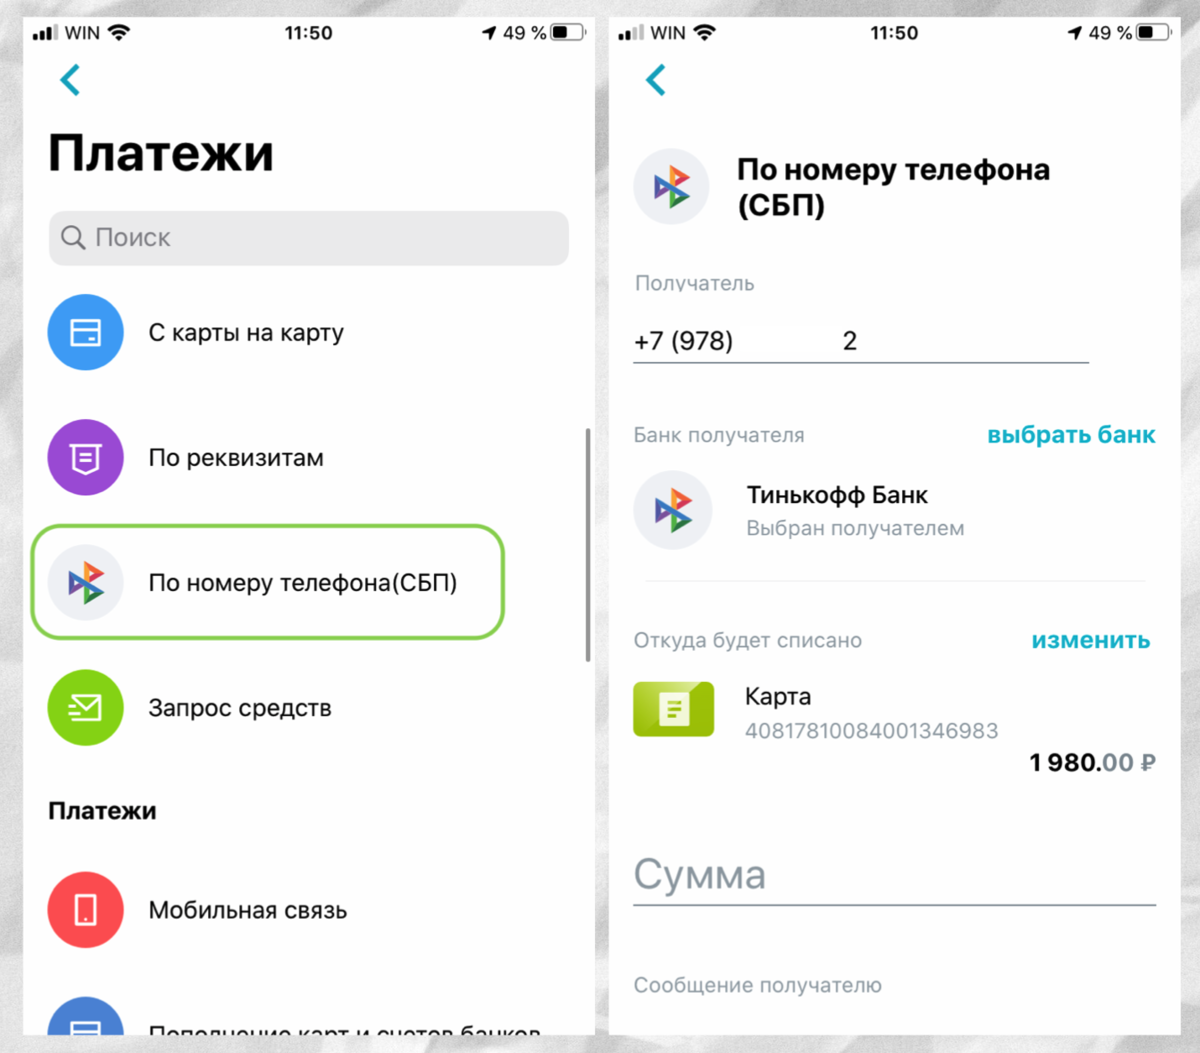 Как перевести на русский язык меню в телеграмме фото 96